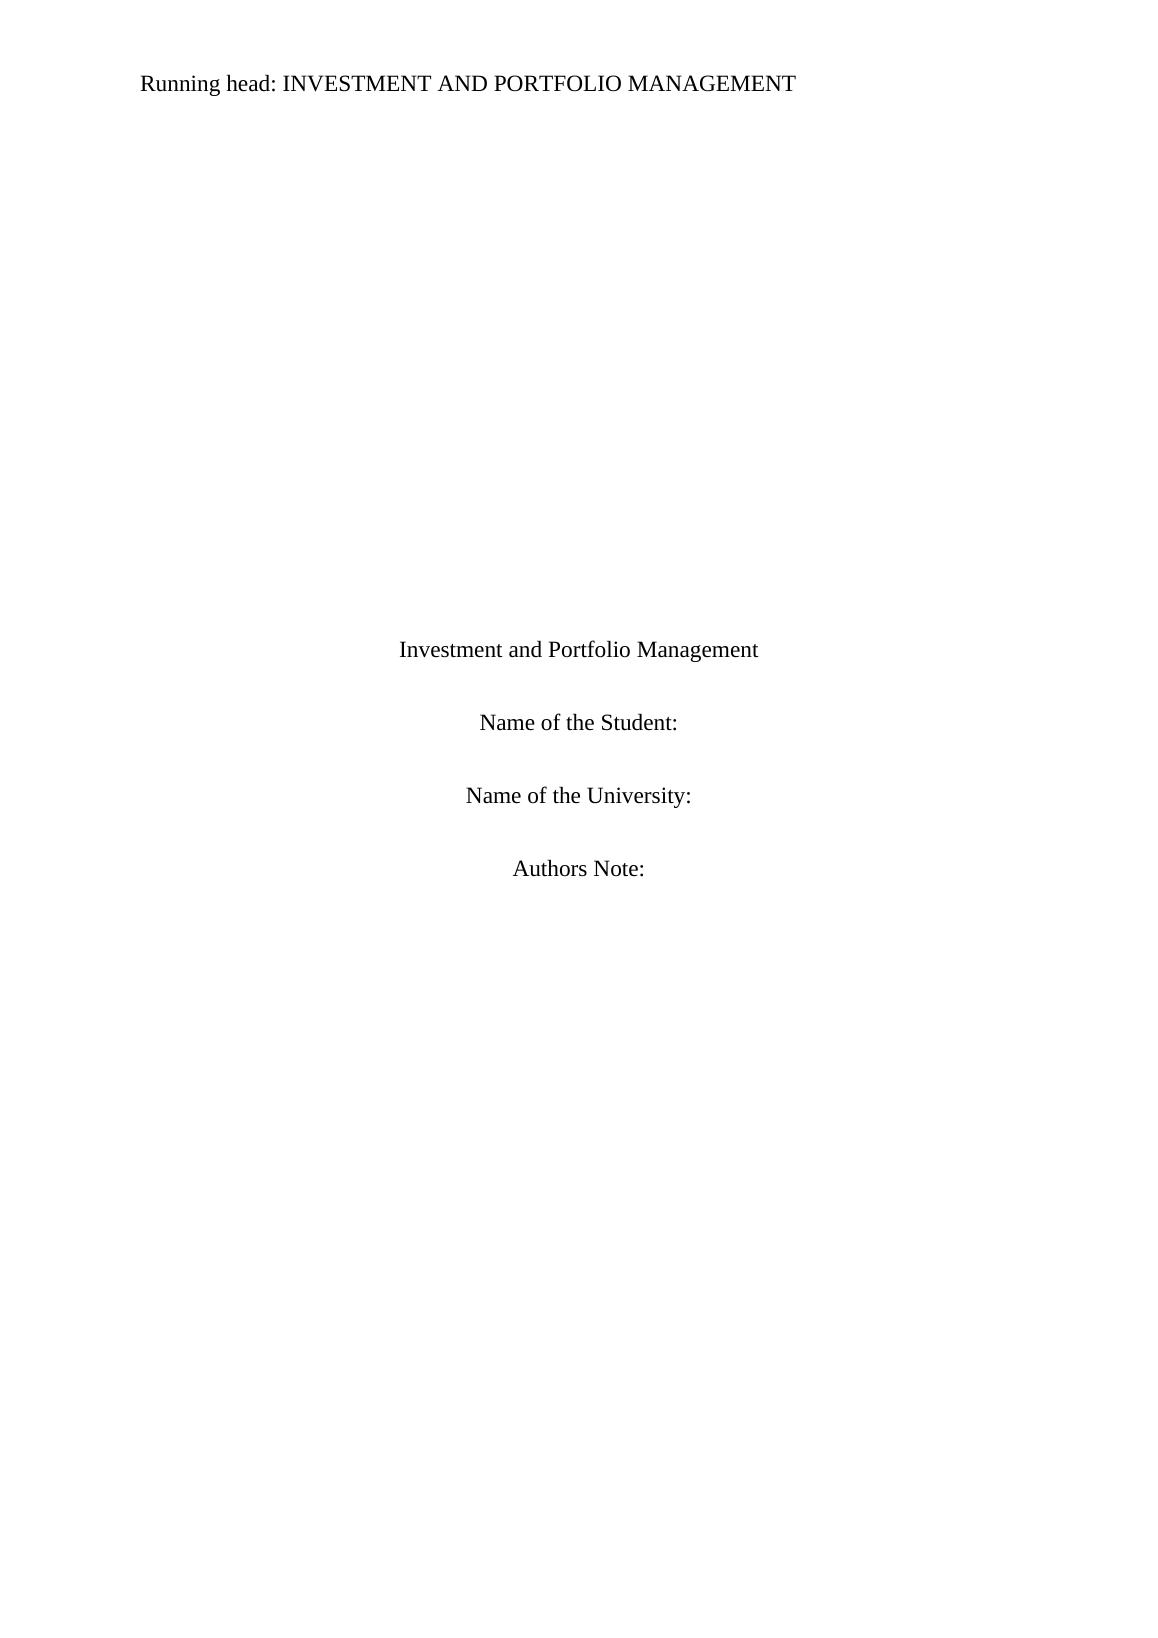 Investment and Portfolio Management - Assignment_1